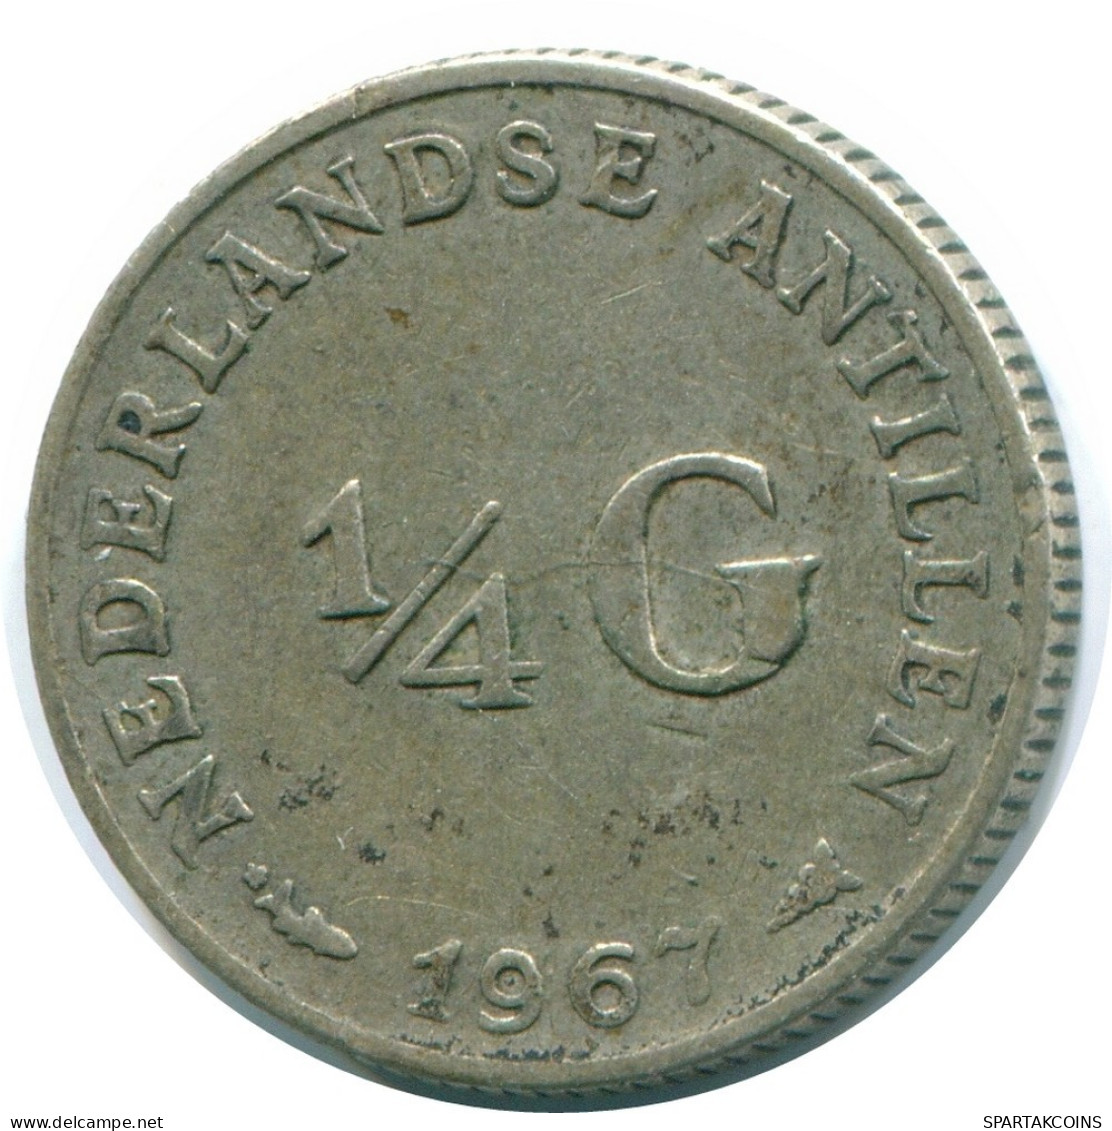 1/4 GULDEN 1967 NIEDERLÄNDISCHE ANTILLEN SILBER Koloniale Münze #NL11562.4.D.A - Niederländische Antillen